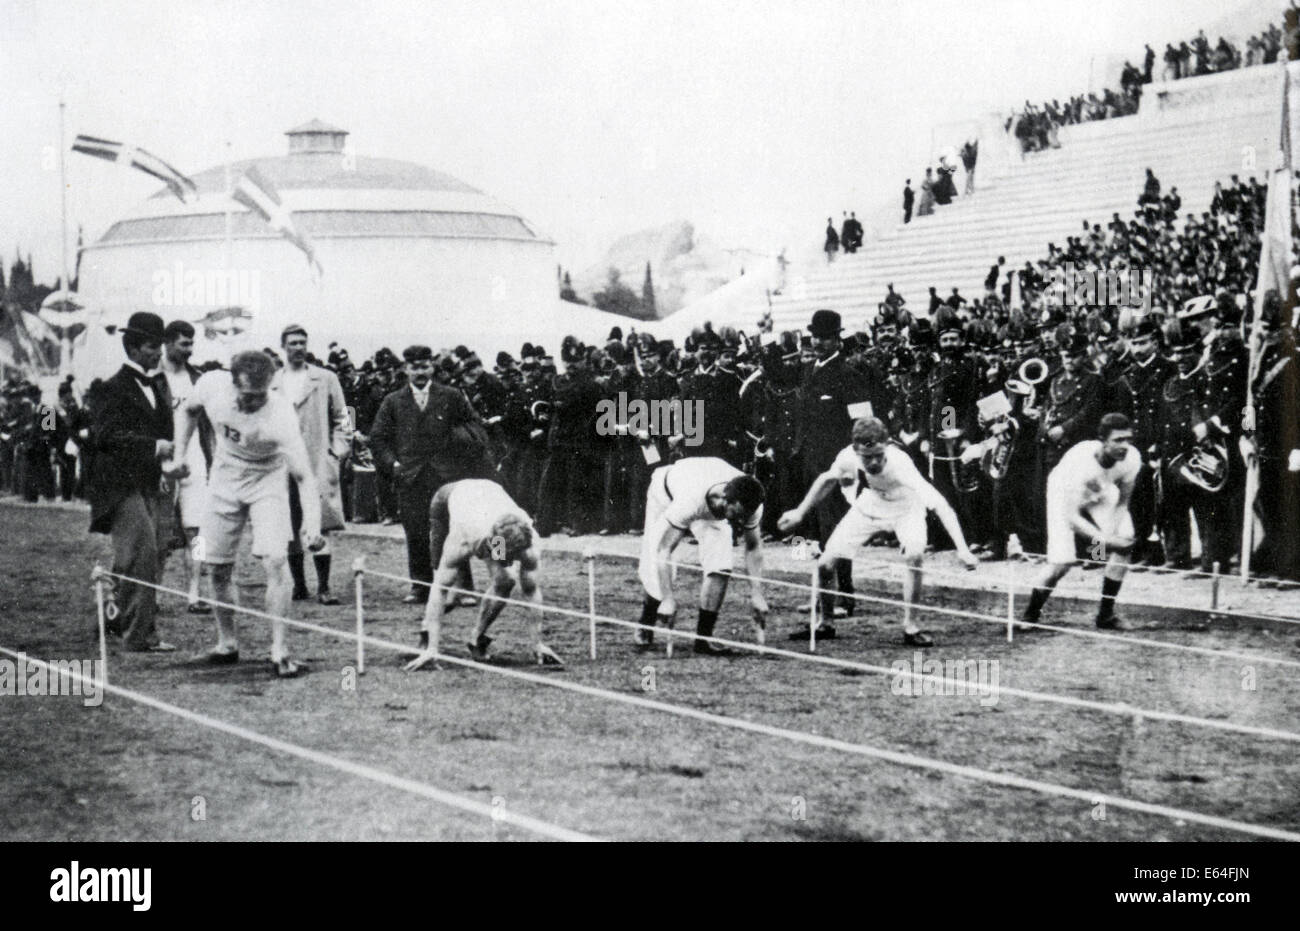 Sommer-Olympische Spiele Athen 1896. Beginn des ersten Laufes von den  Herren 100-Meter-Rennen. Siehe Beschreibung unten Stockfotografie - Alamy